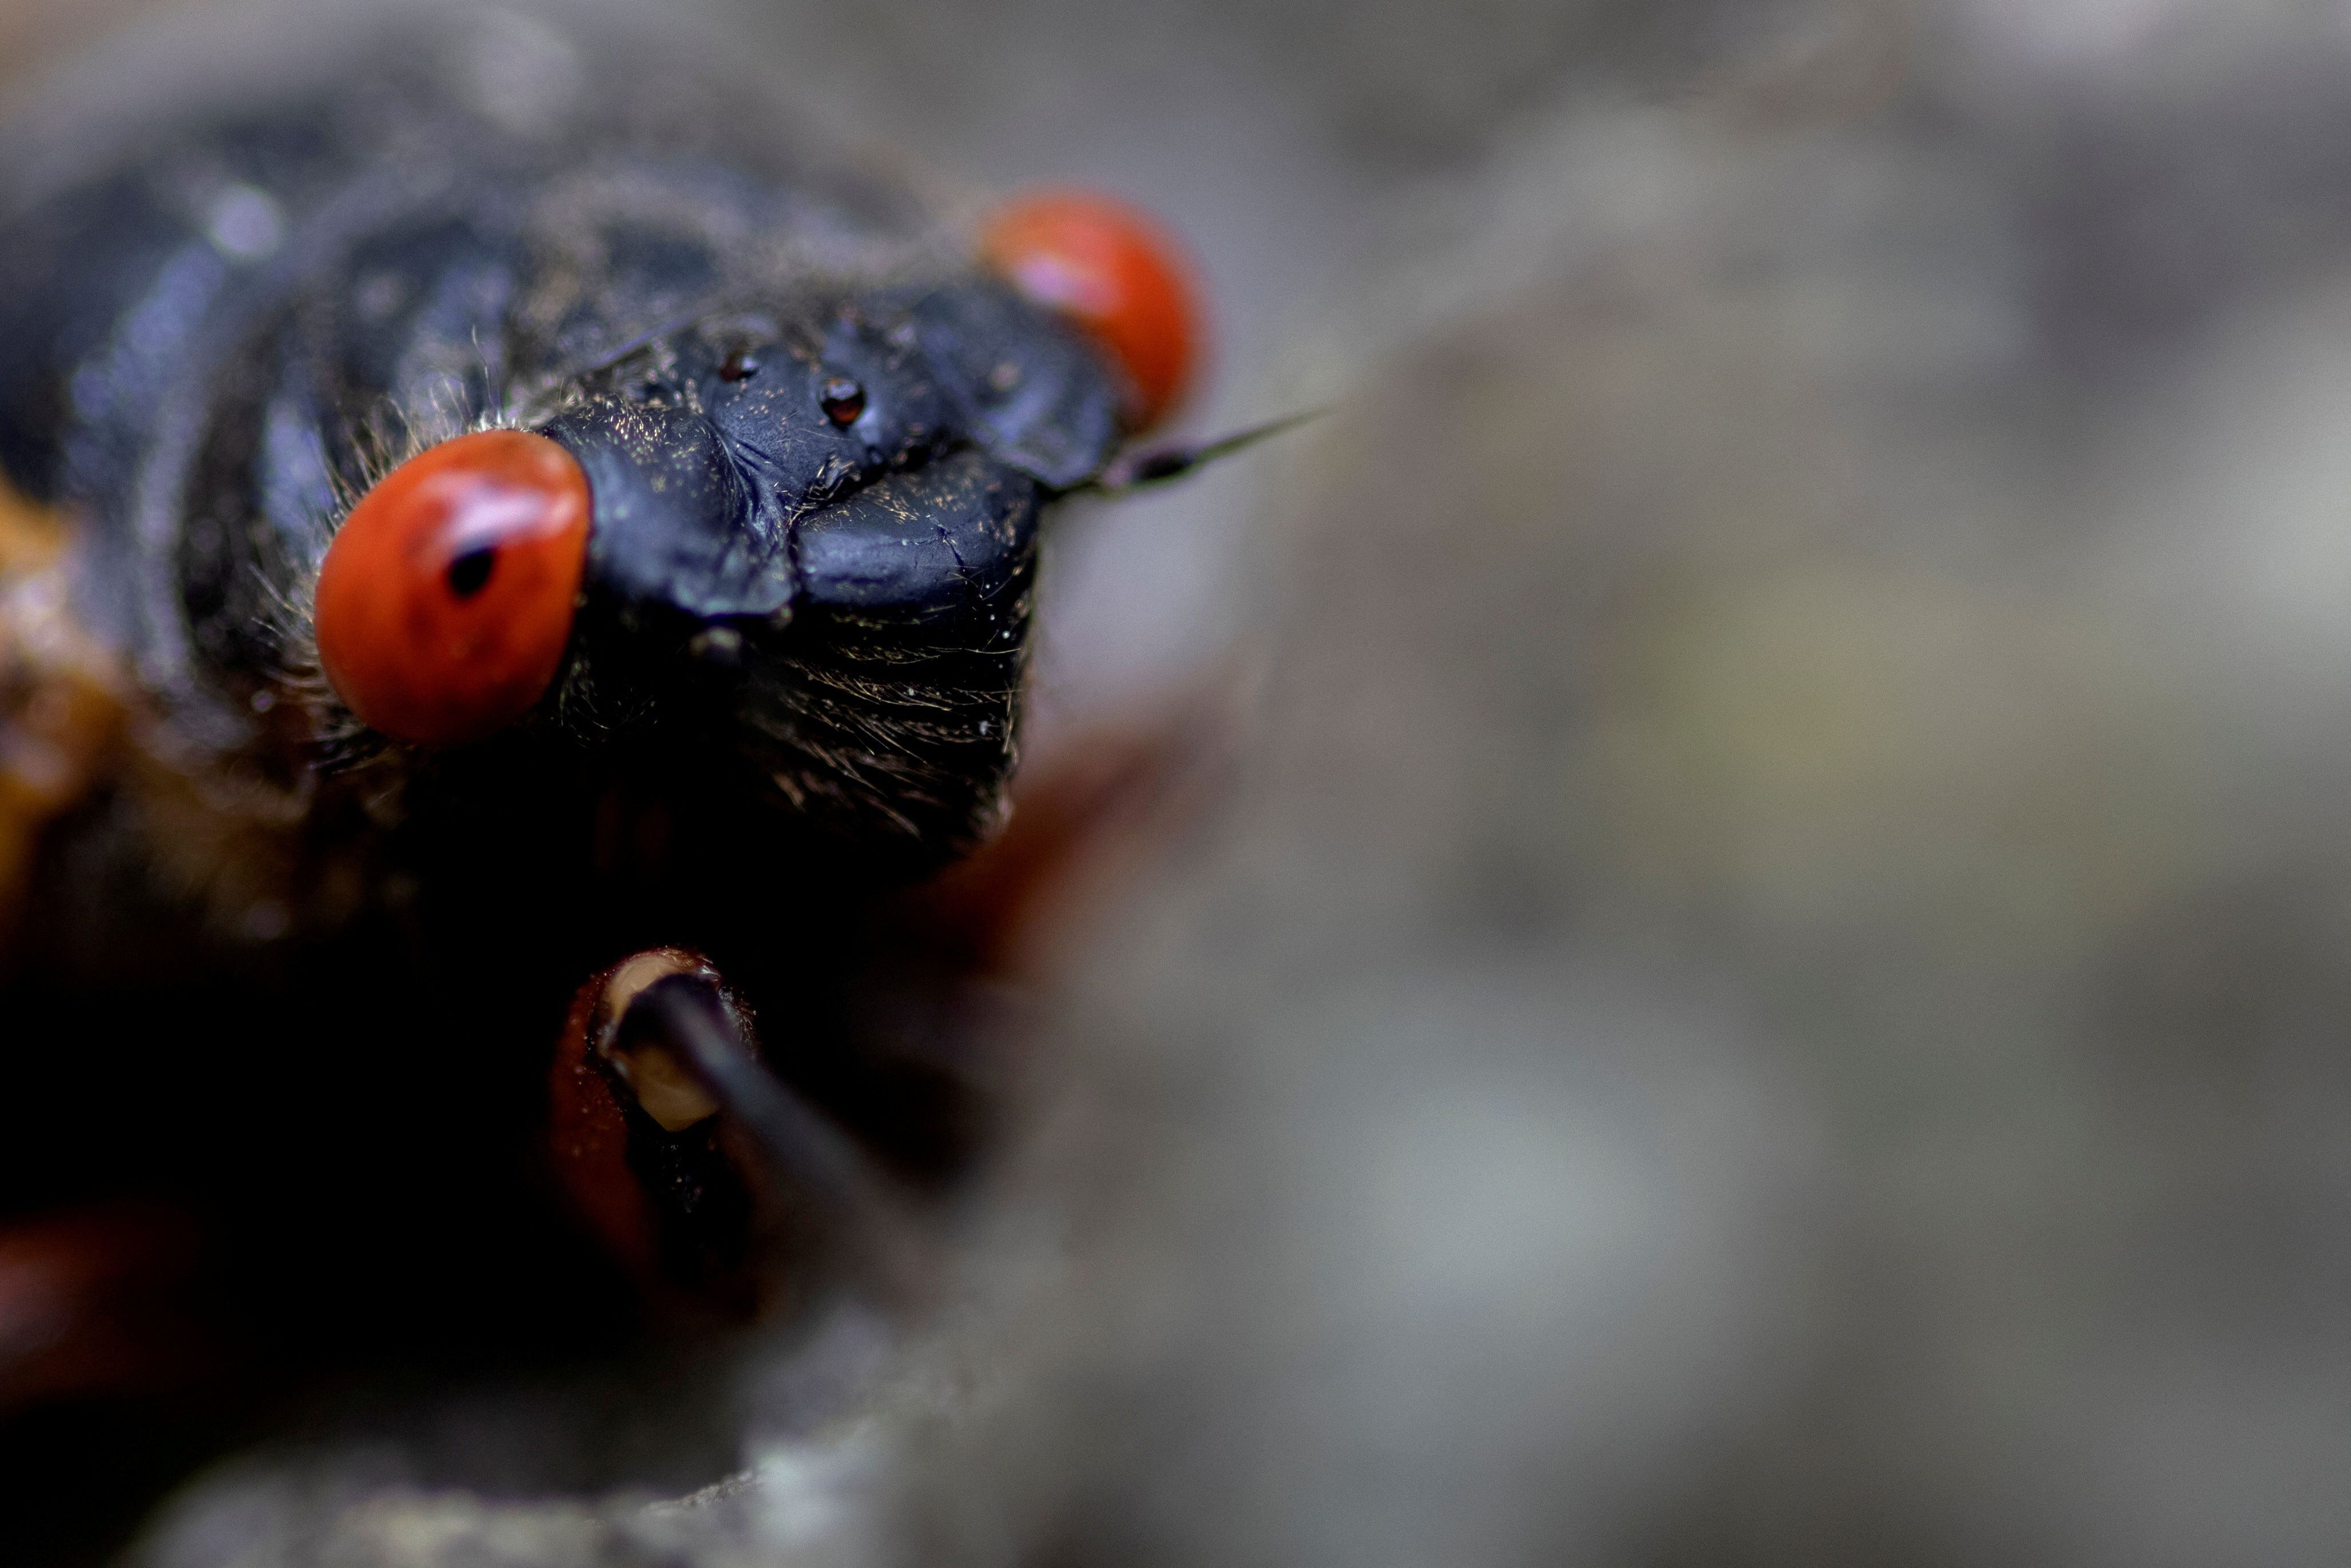 Los científicos tenían la creencia de que al ser insectos pequeños, las cigarras orinarían gotas. (REUTERS/Carlos Barria/File Photo)